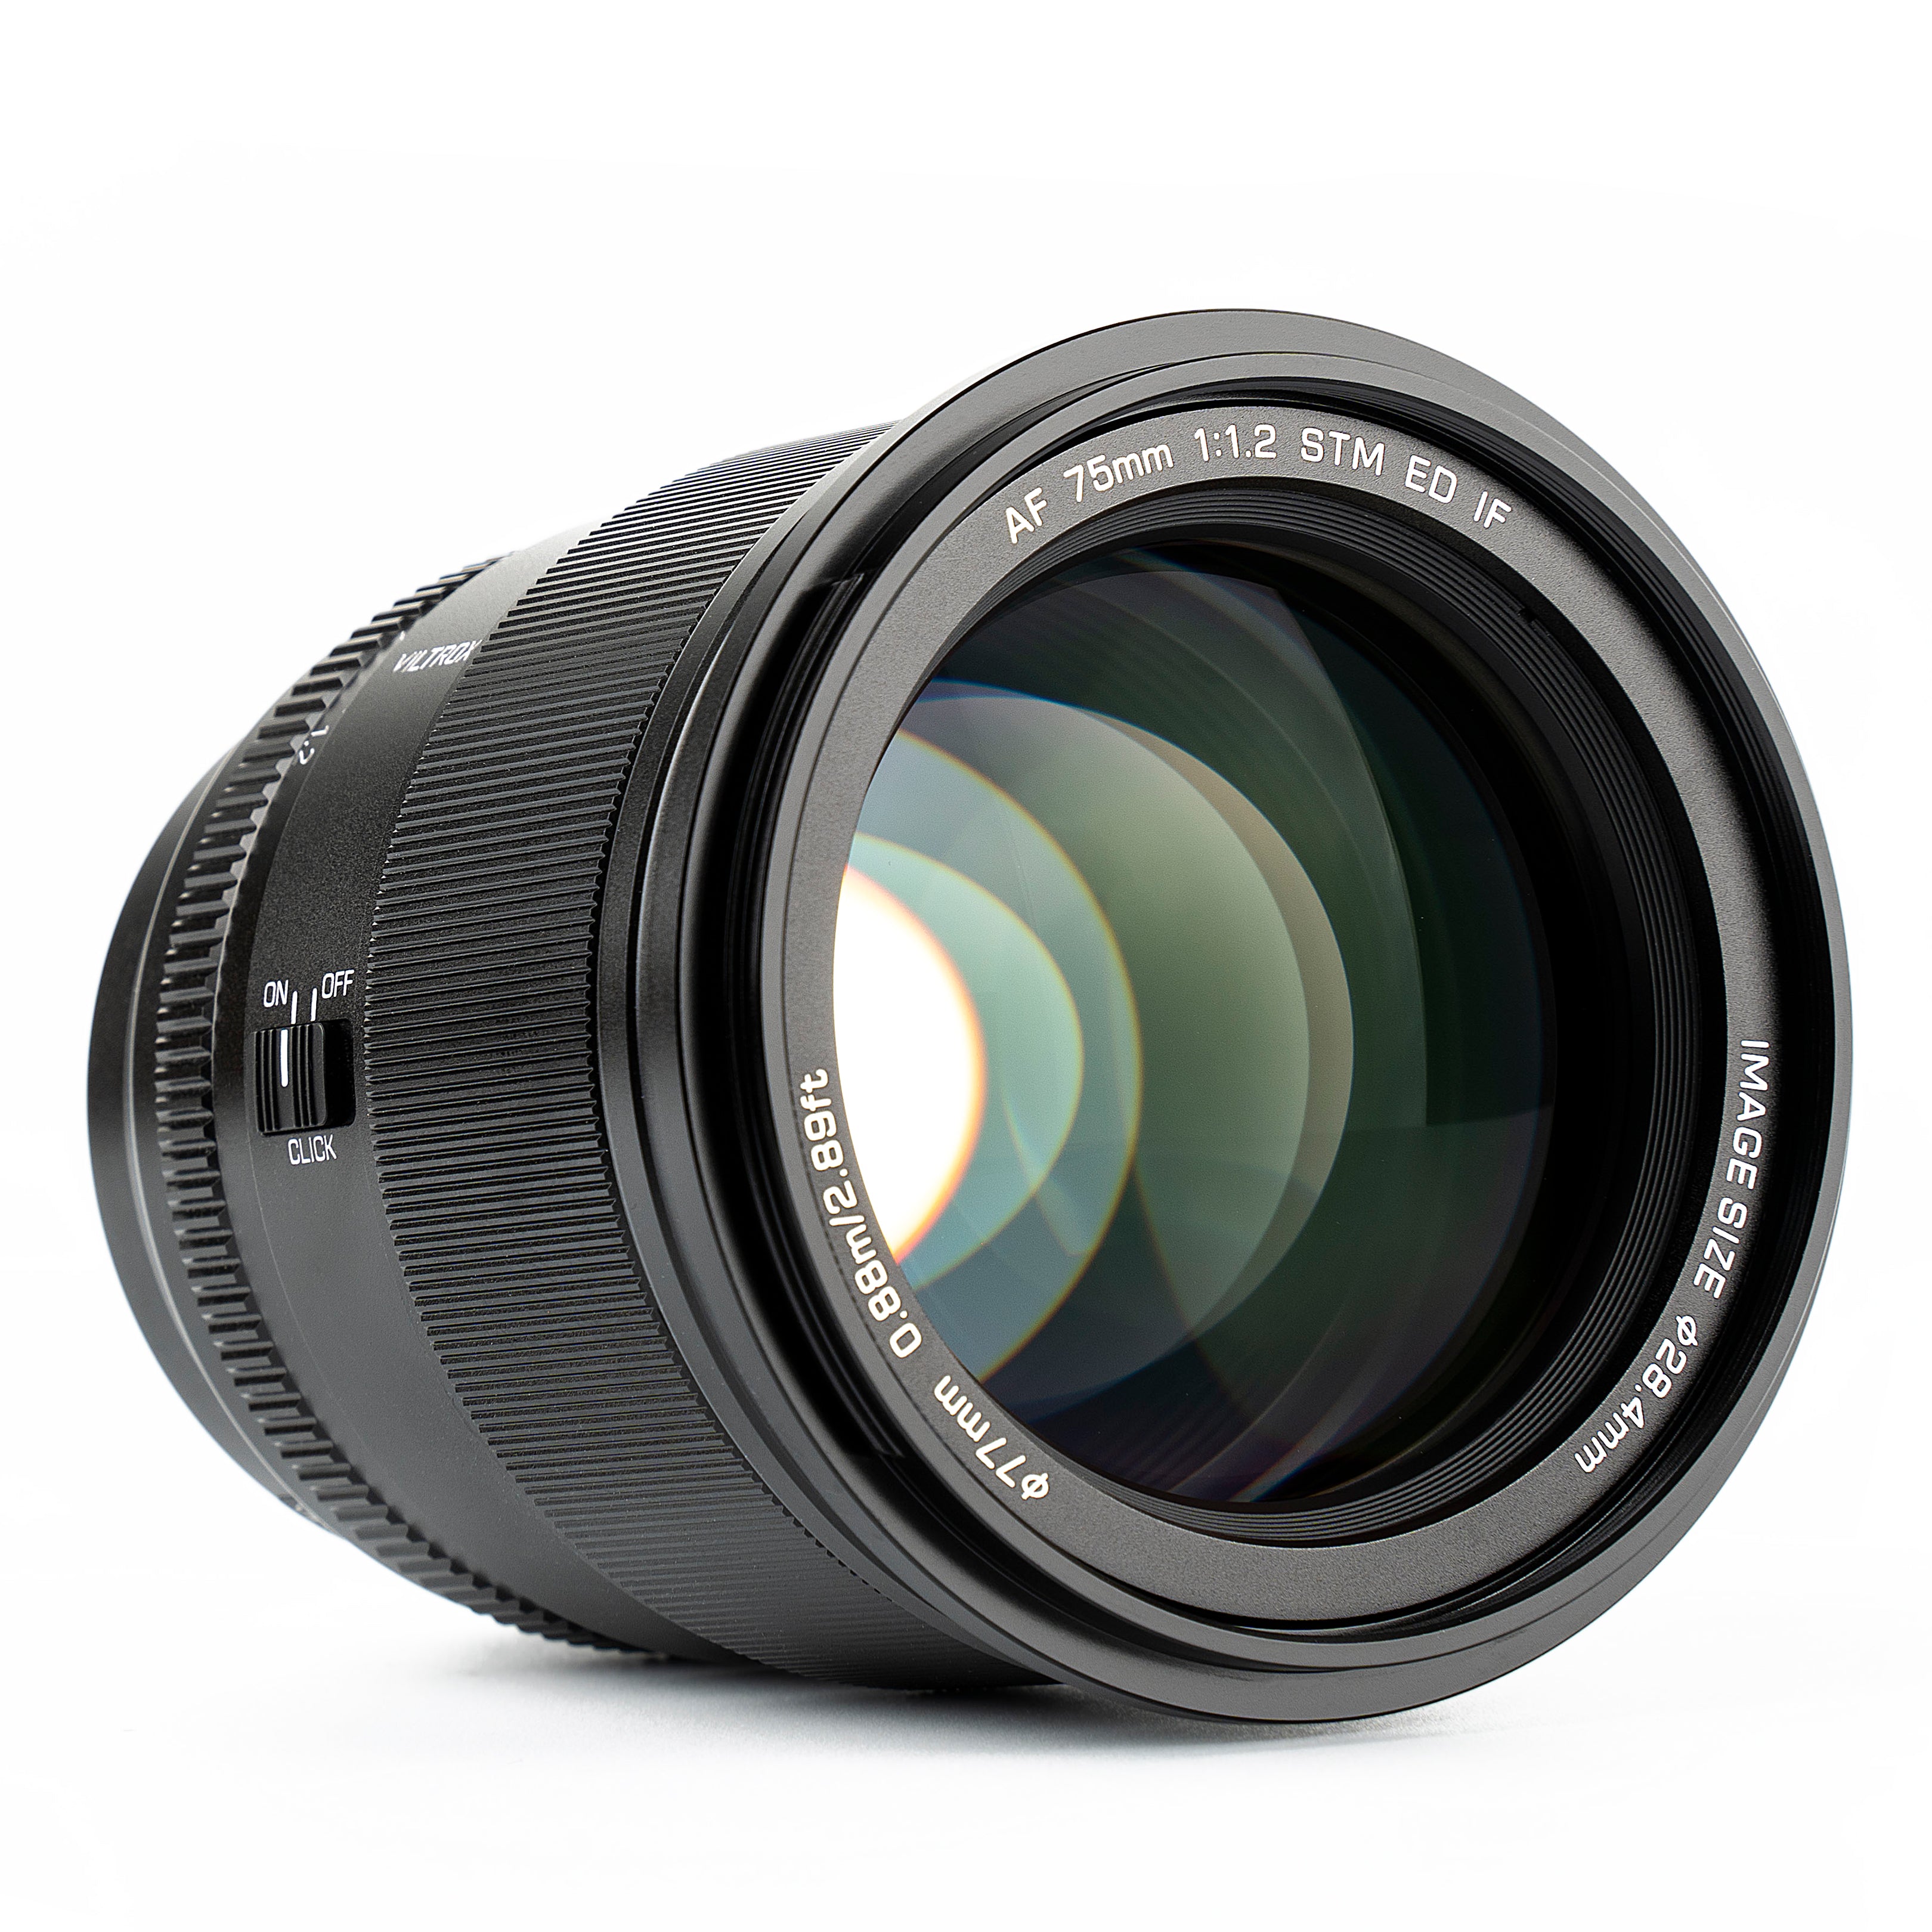 VILTROX PRO Series 75mm F1.2 E/Z Auto Focus Large Aperture APS-C Prime Lens Designed for Sony E-mount Nikon Z-mount Cameras